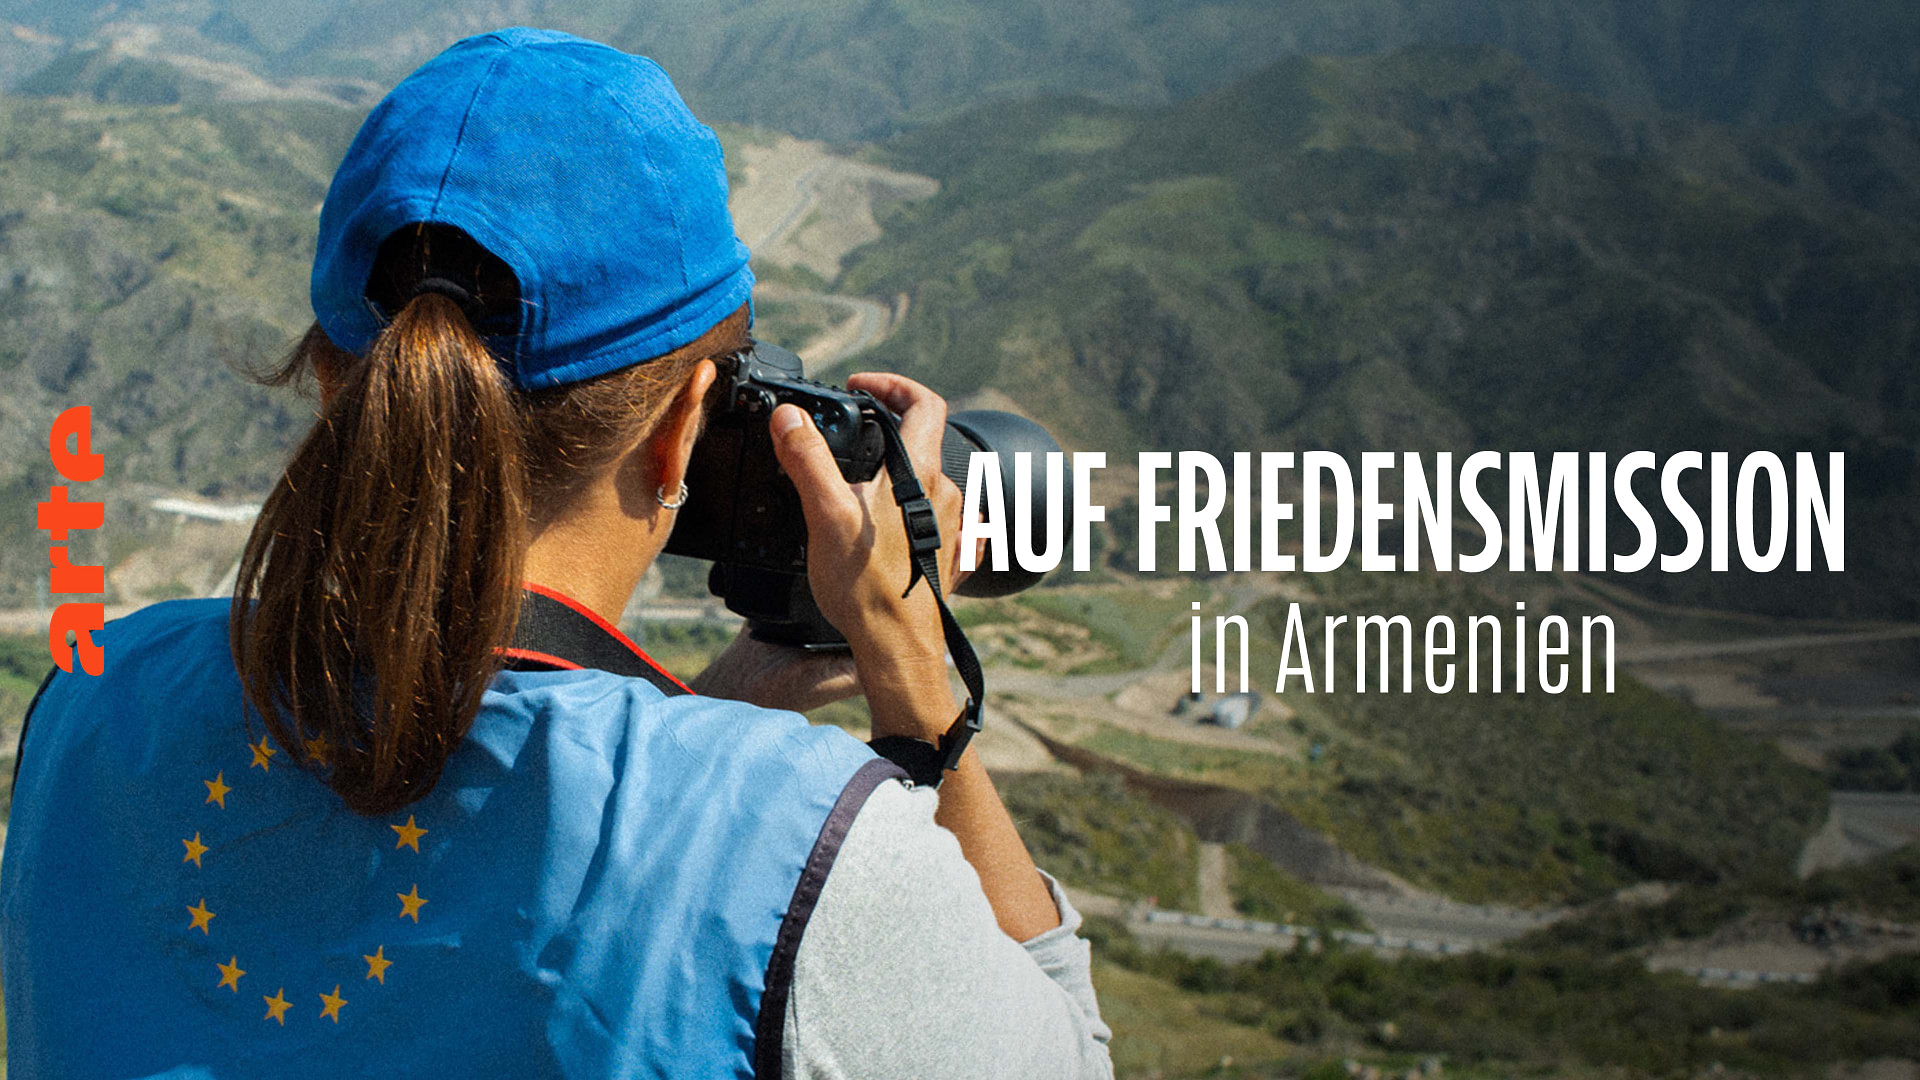 Re: Auf Friedensmission in Armenien